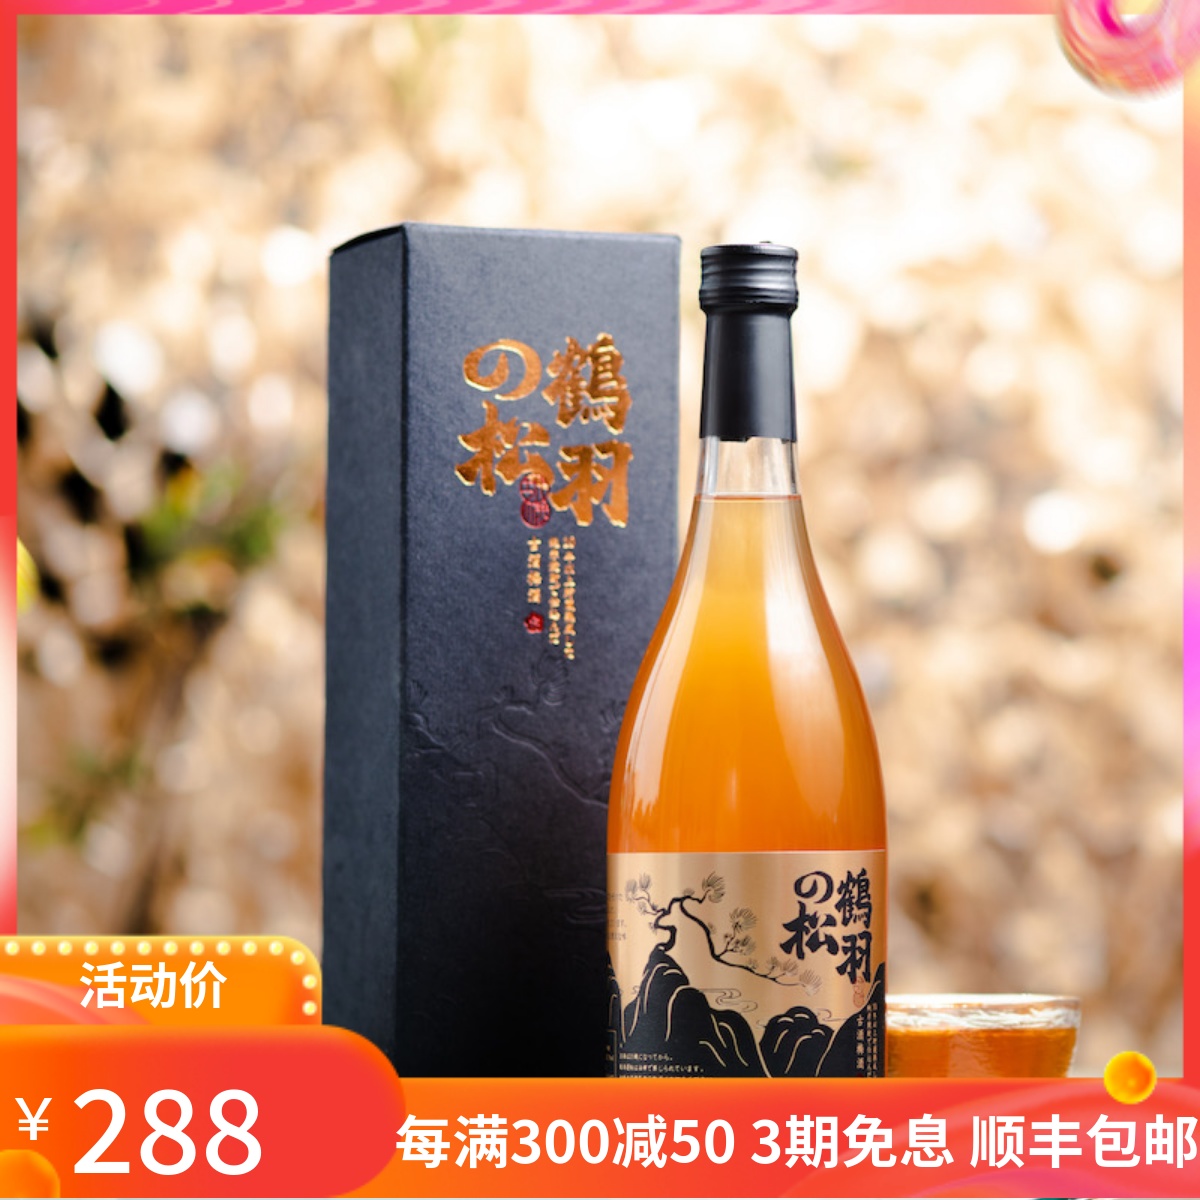 日本十年陈古酒梅酒限量2000瓶